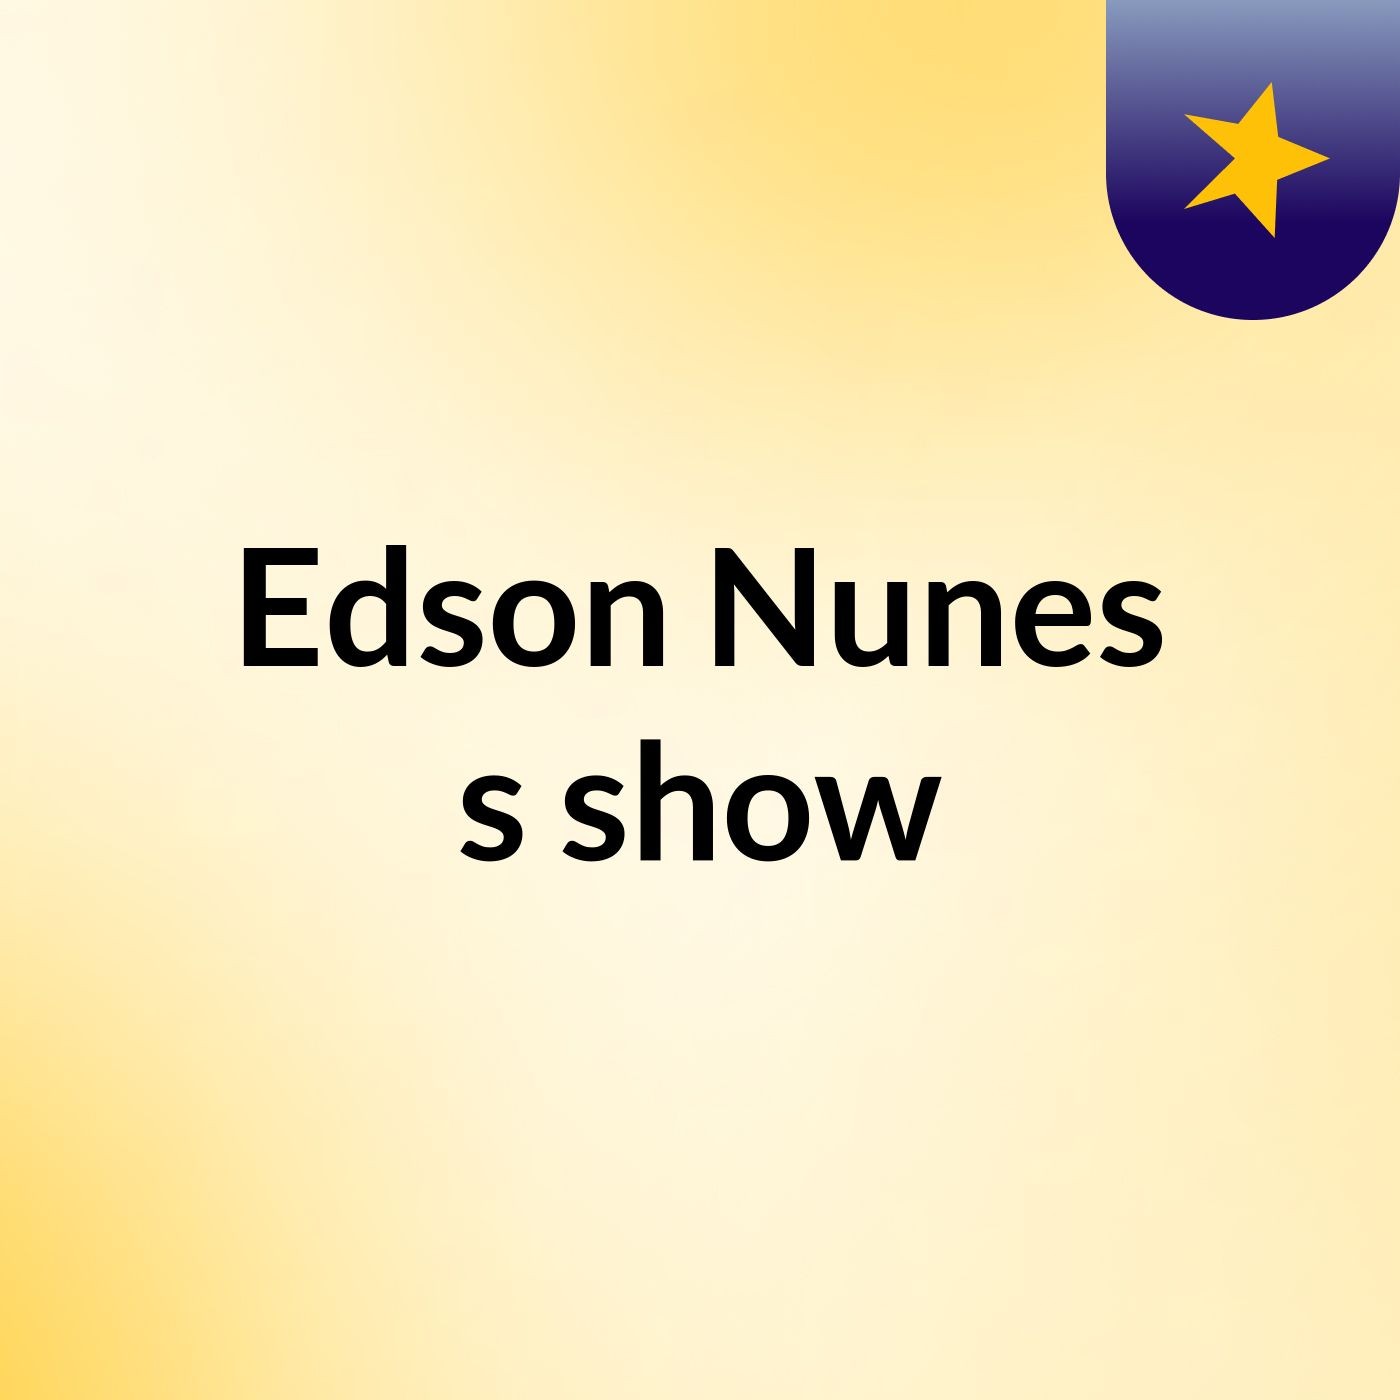 Edson Nunes's show